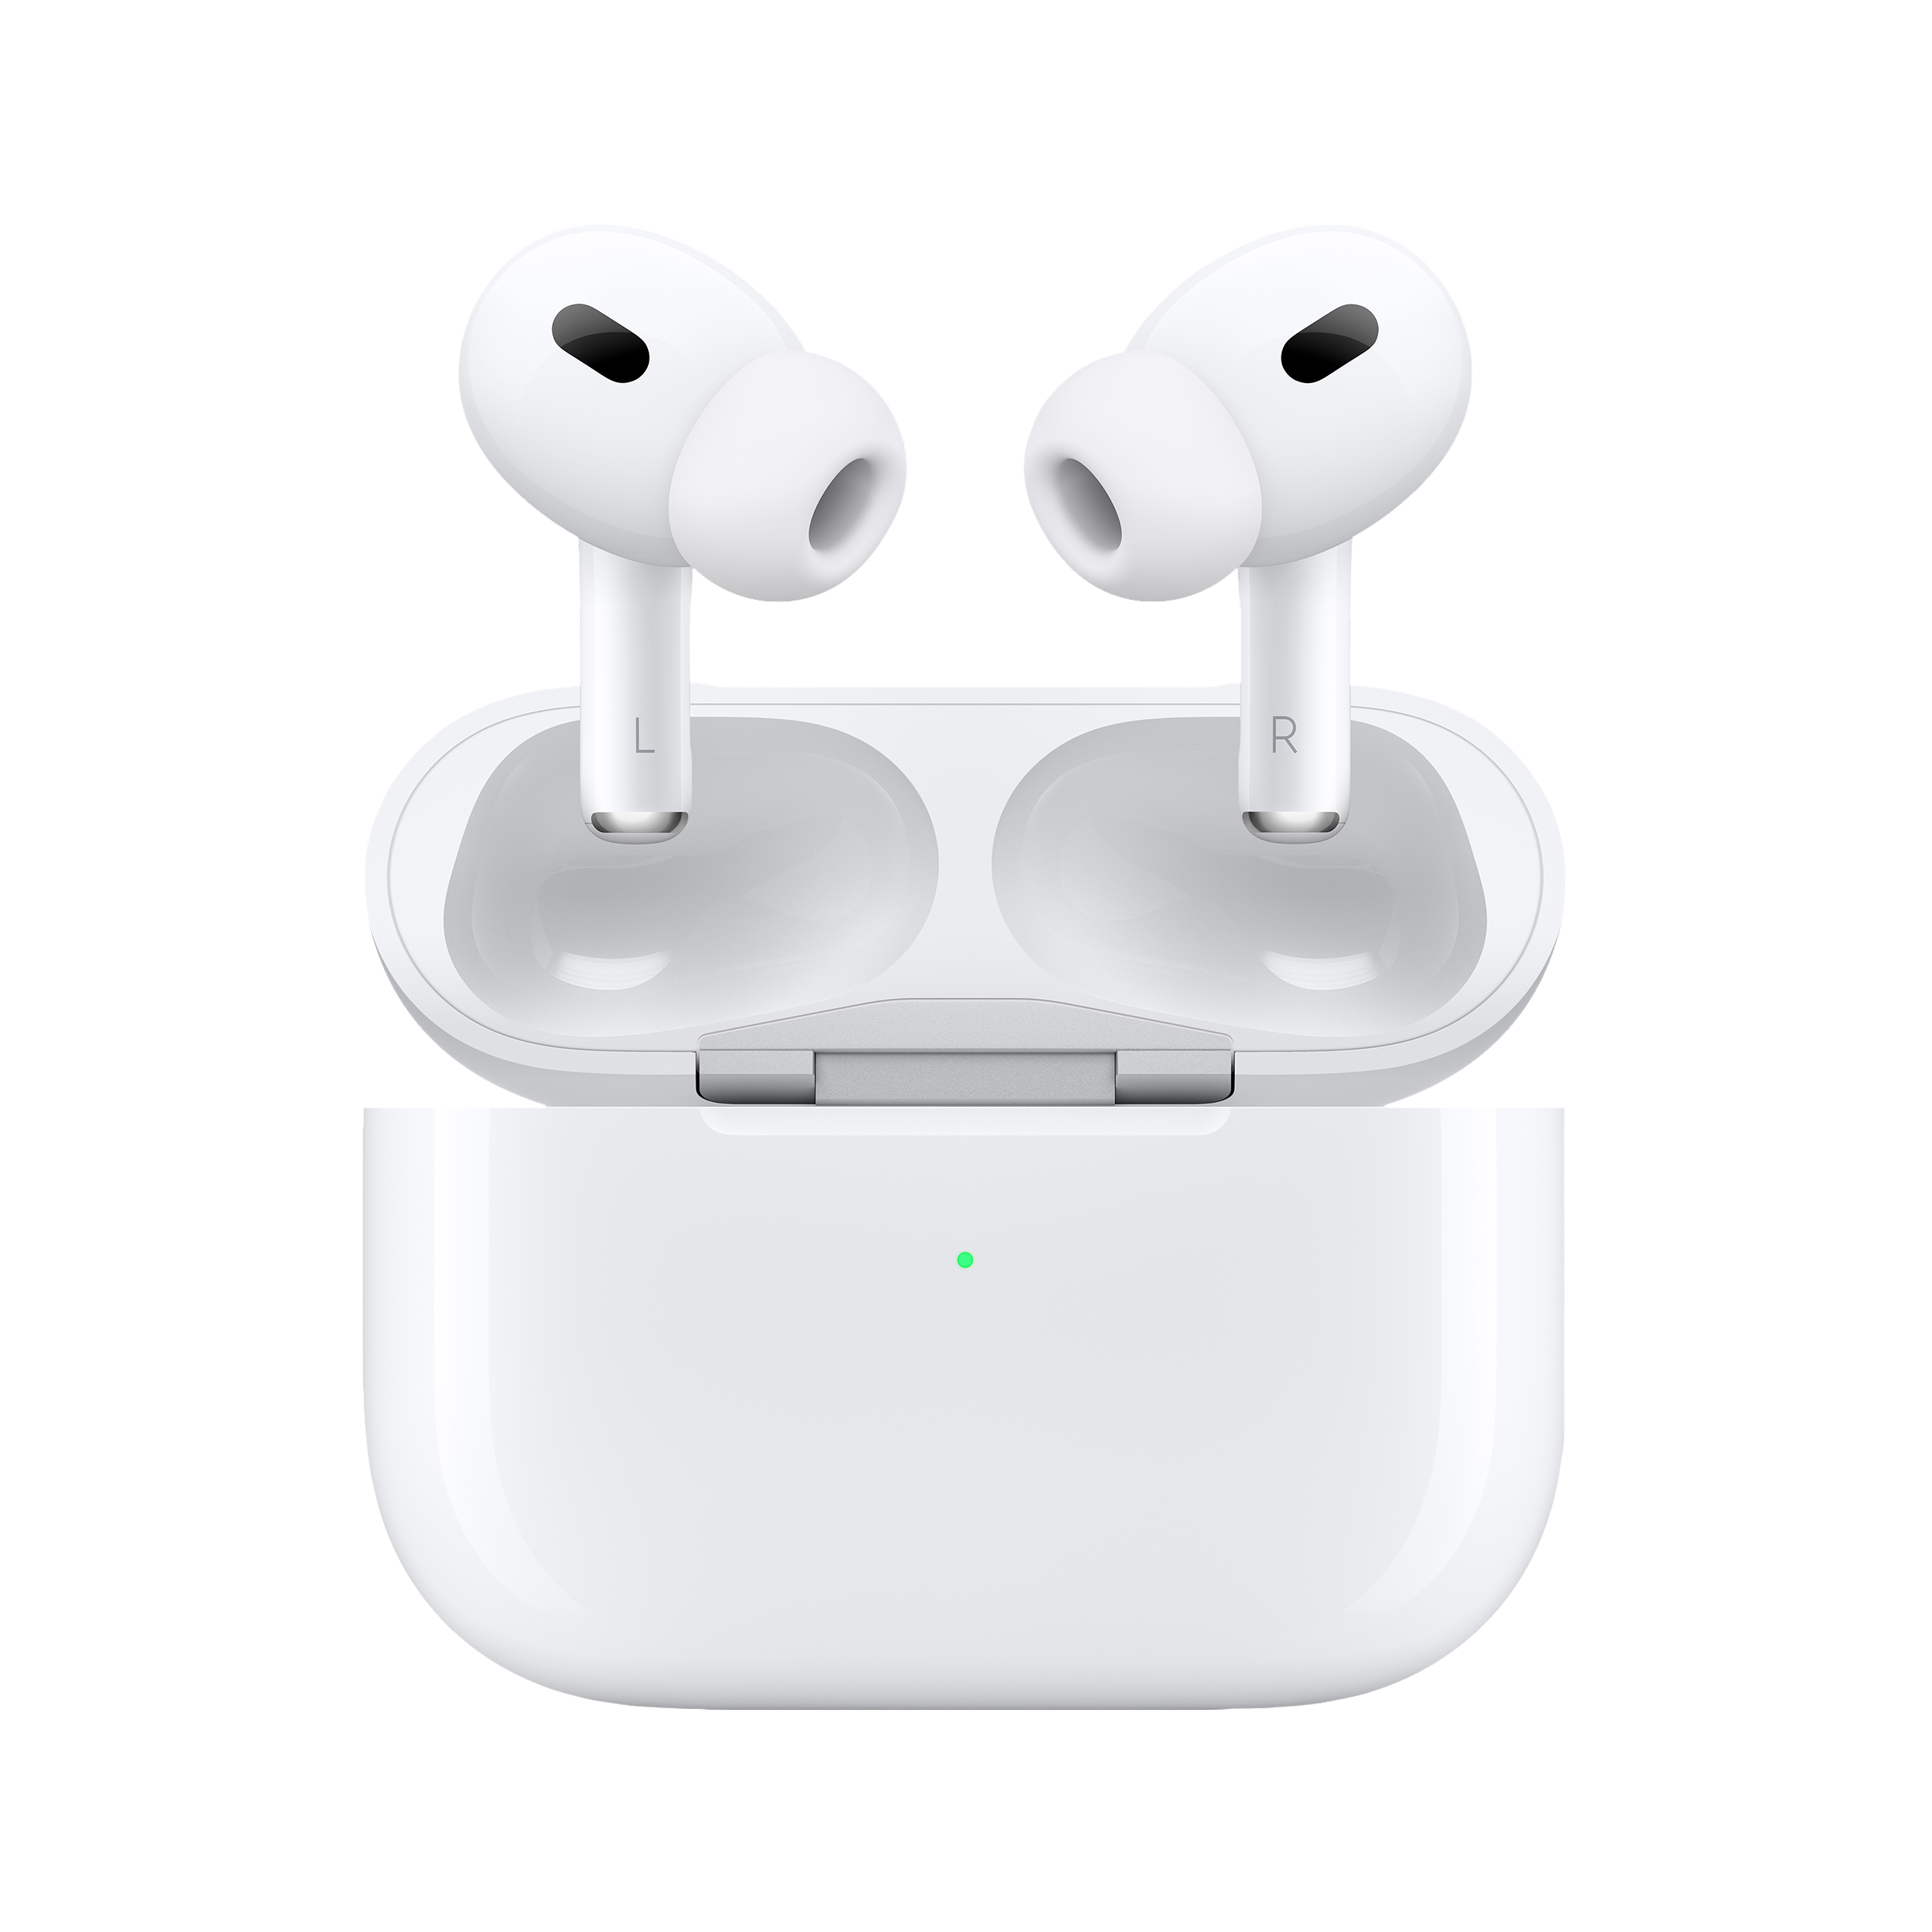 anklageren Vent et øjeblik sanger Buy Apple AirPods Pro (2nd Generation) with MagSafe Charging Case Online -  Croma